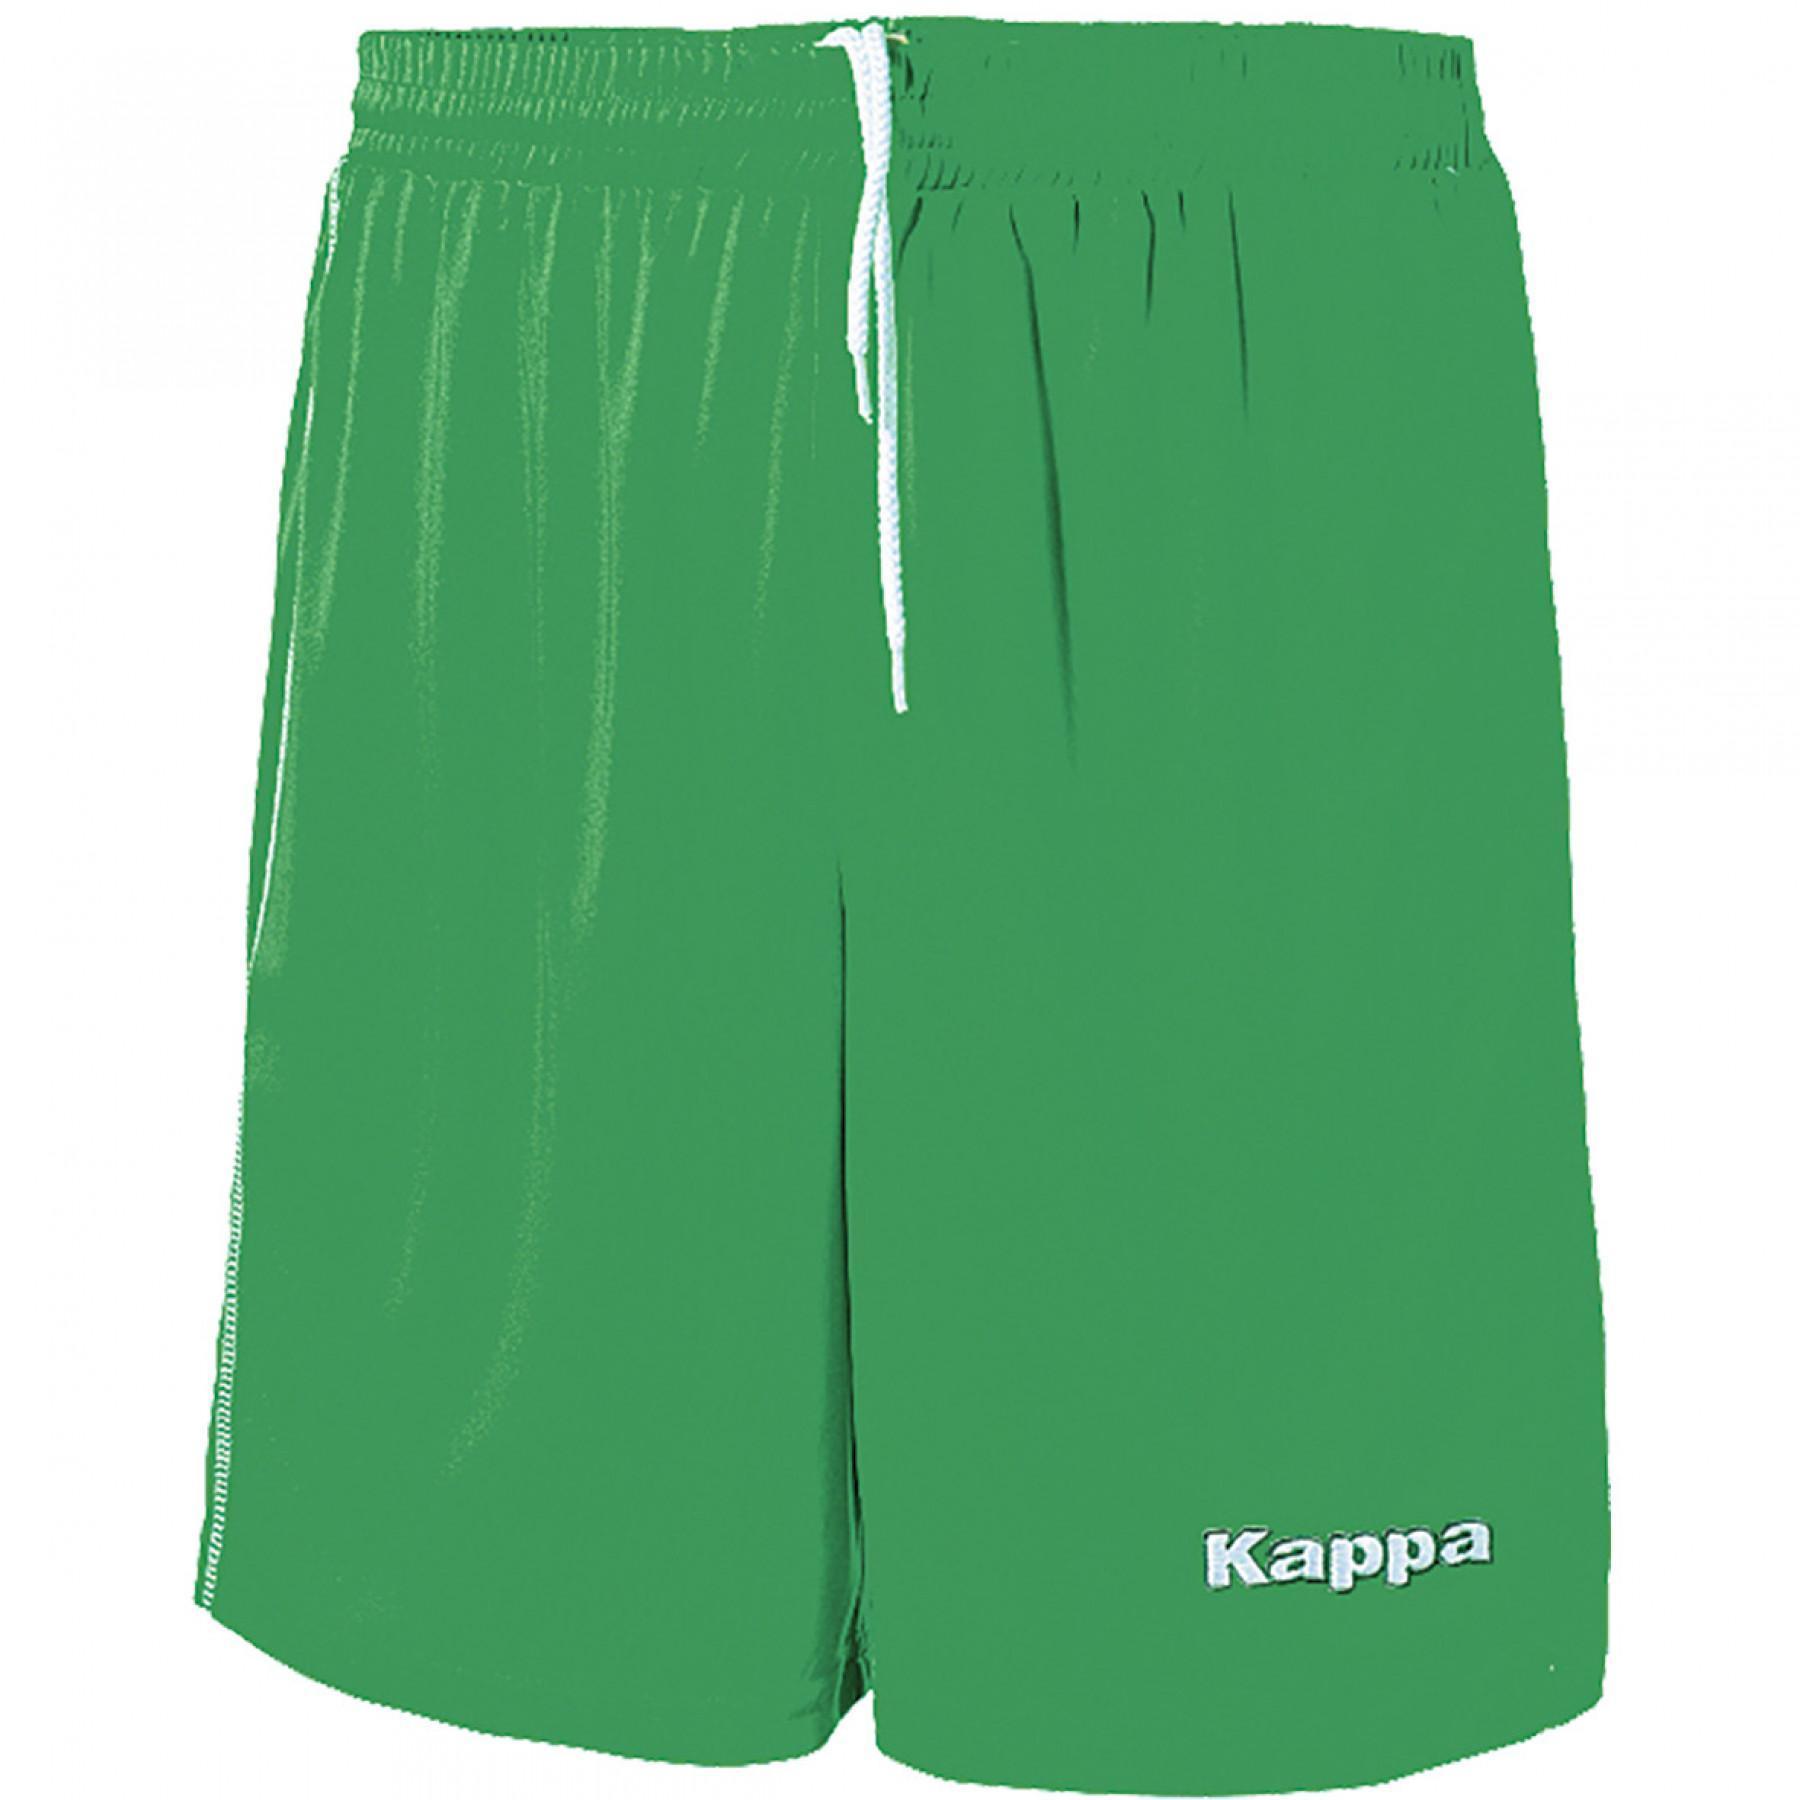 Kinder shorts Kappa Ribolla